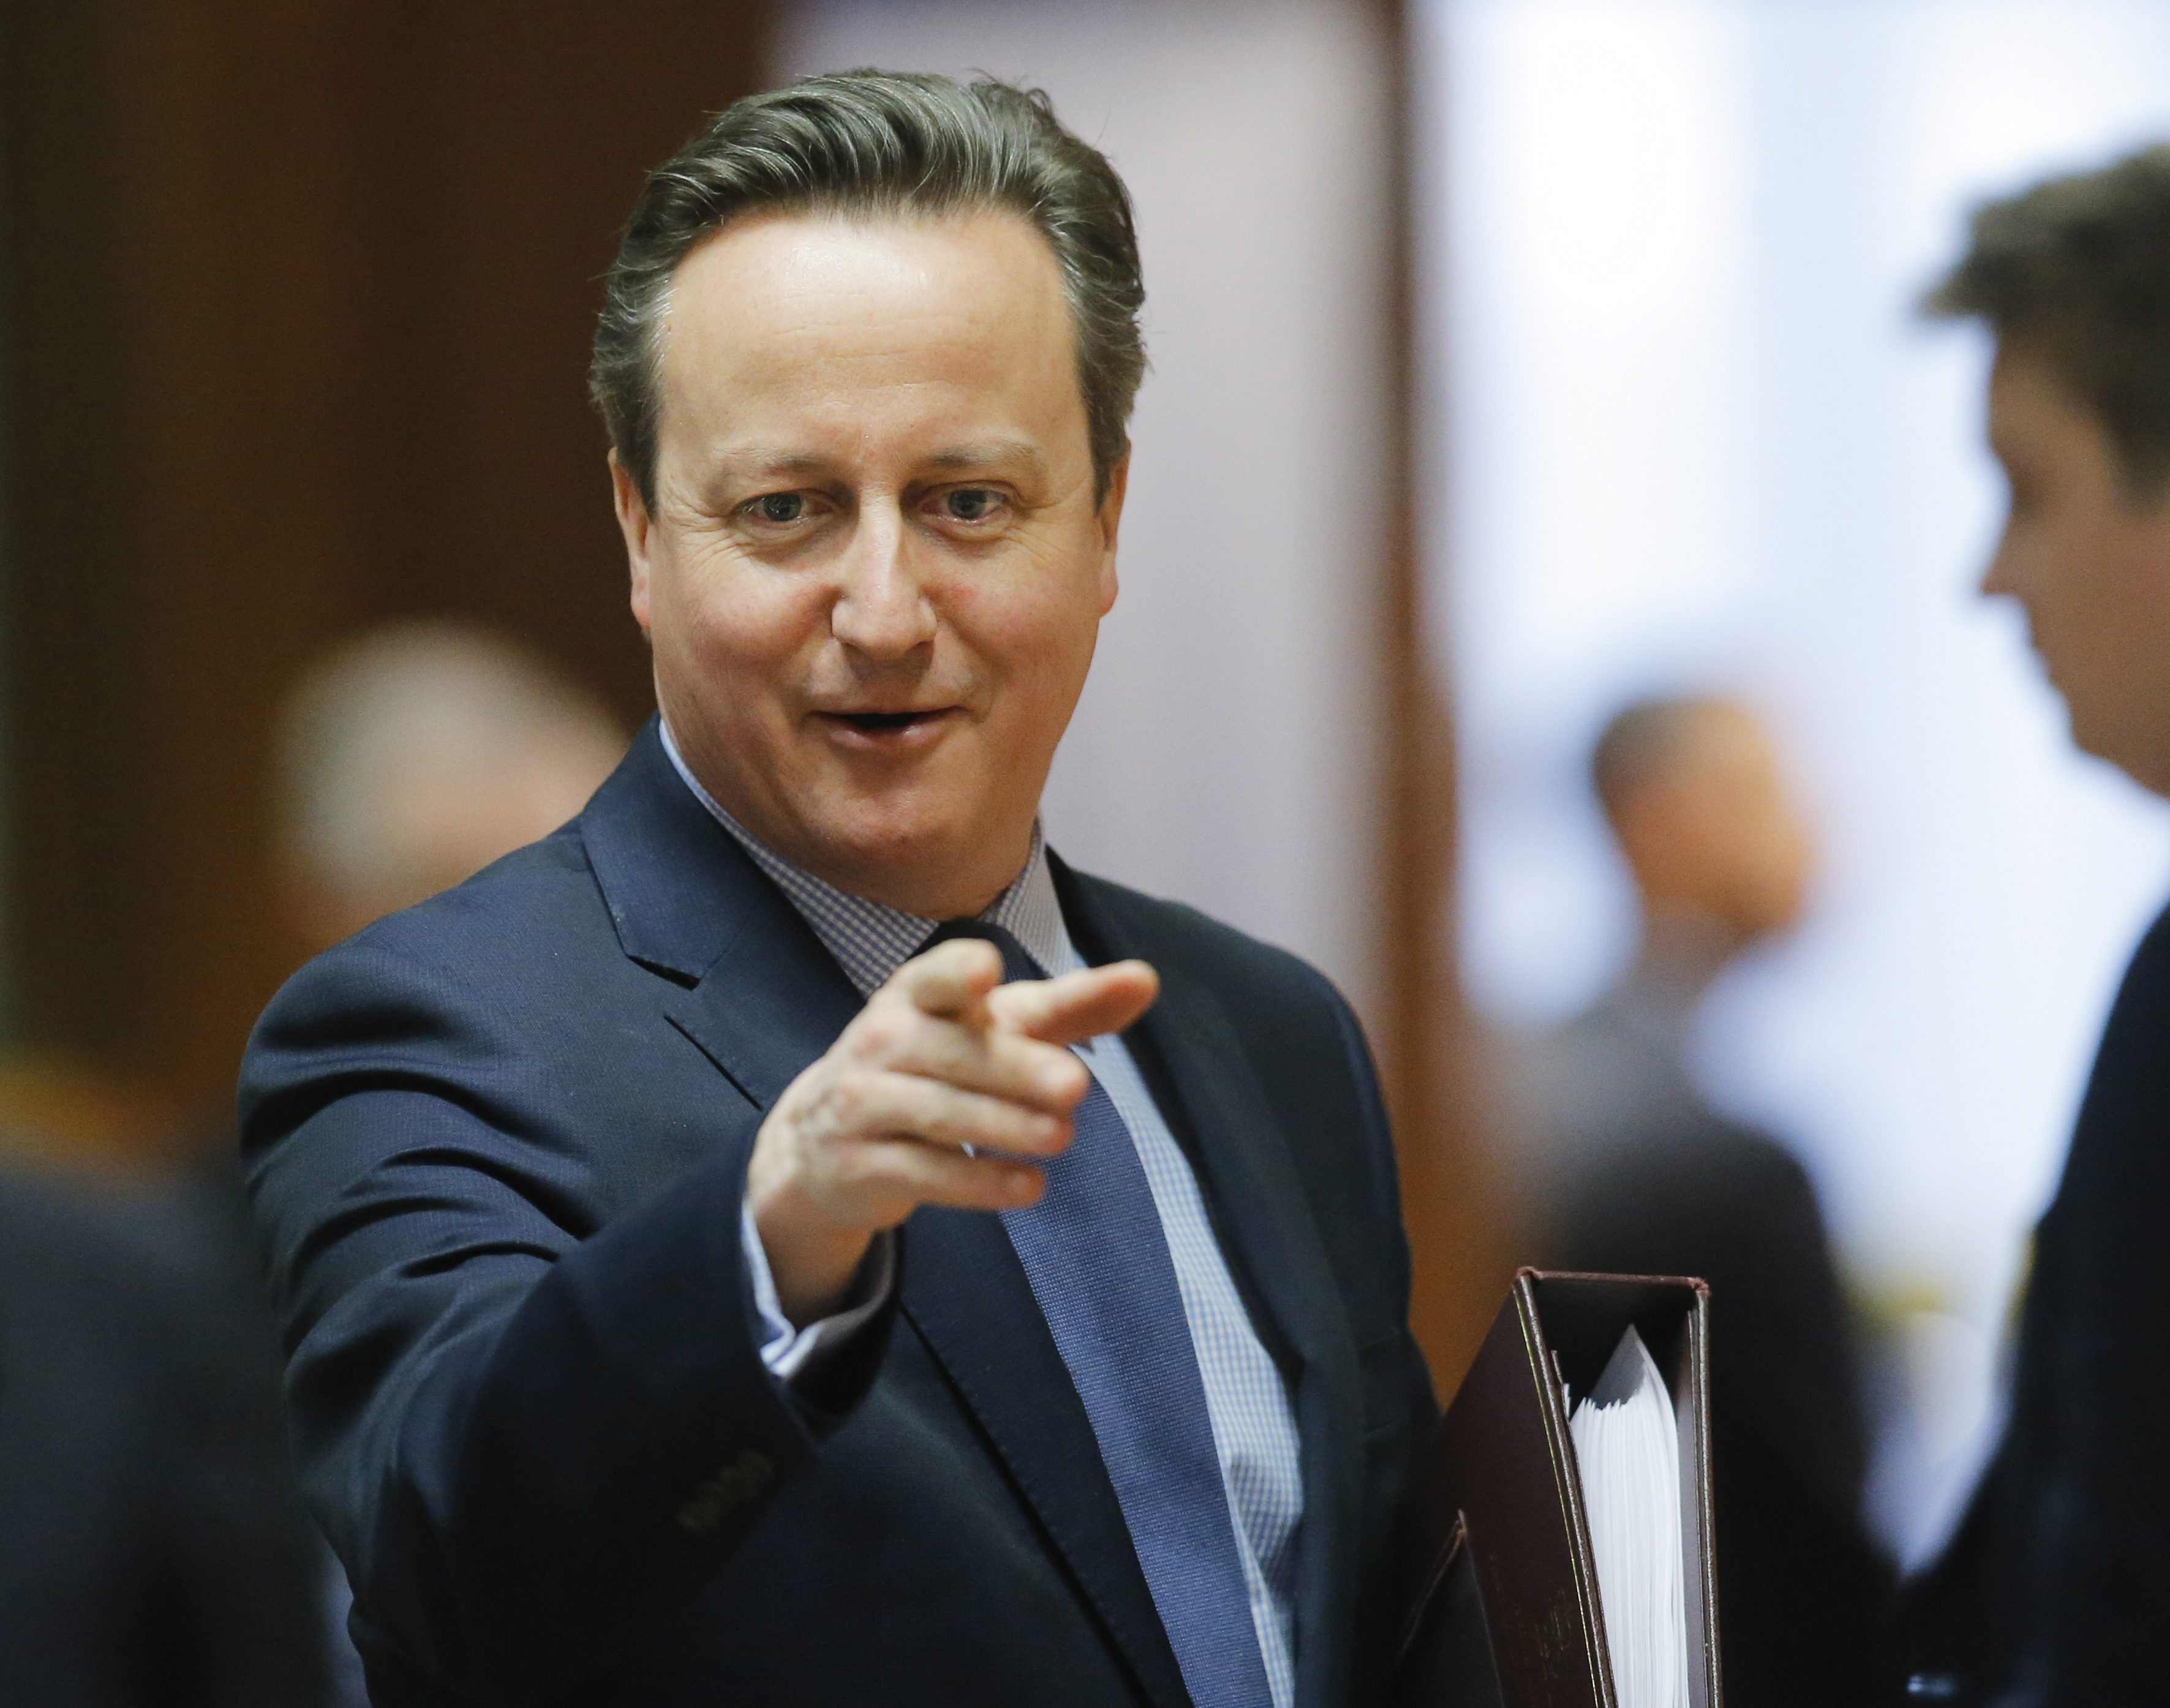 El primer ministro británico, David Cameron, durante la Cumbre de líderes de la Unión Europea celebrada en Bruselas, Bélgica